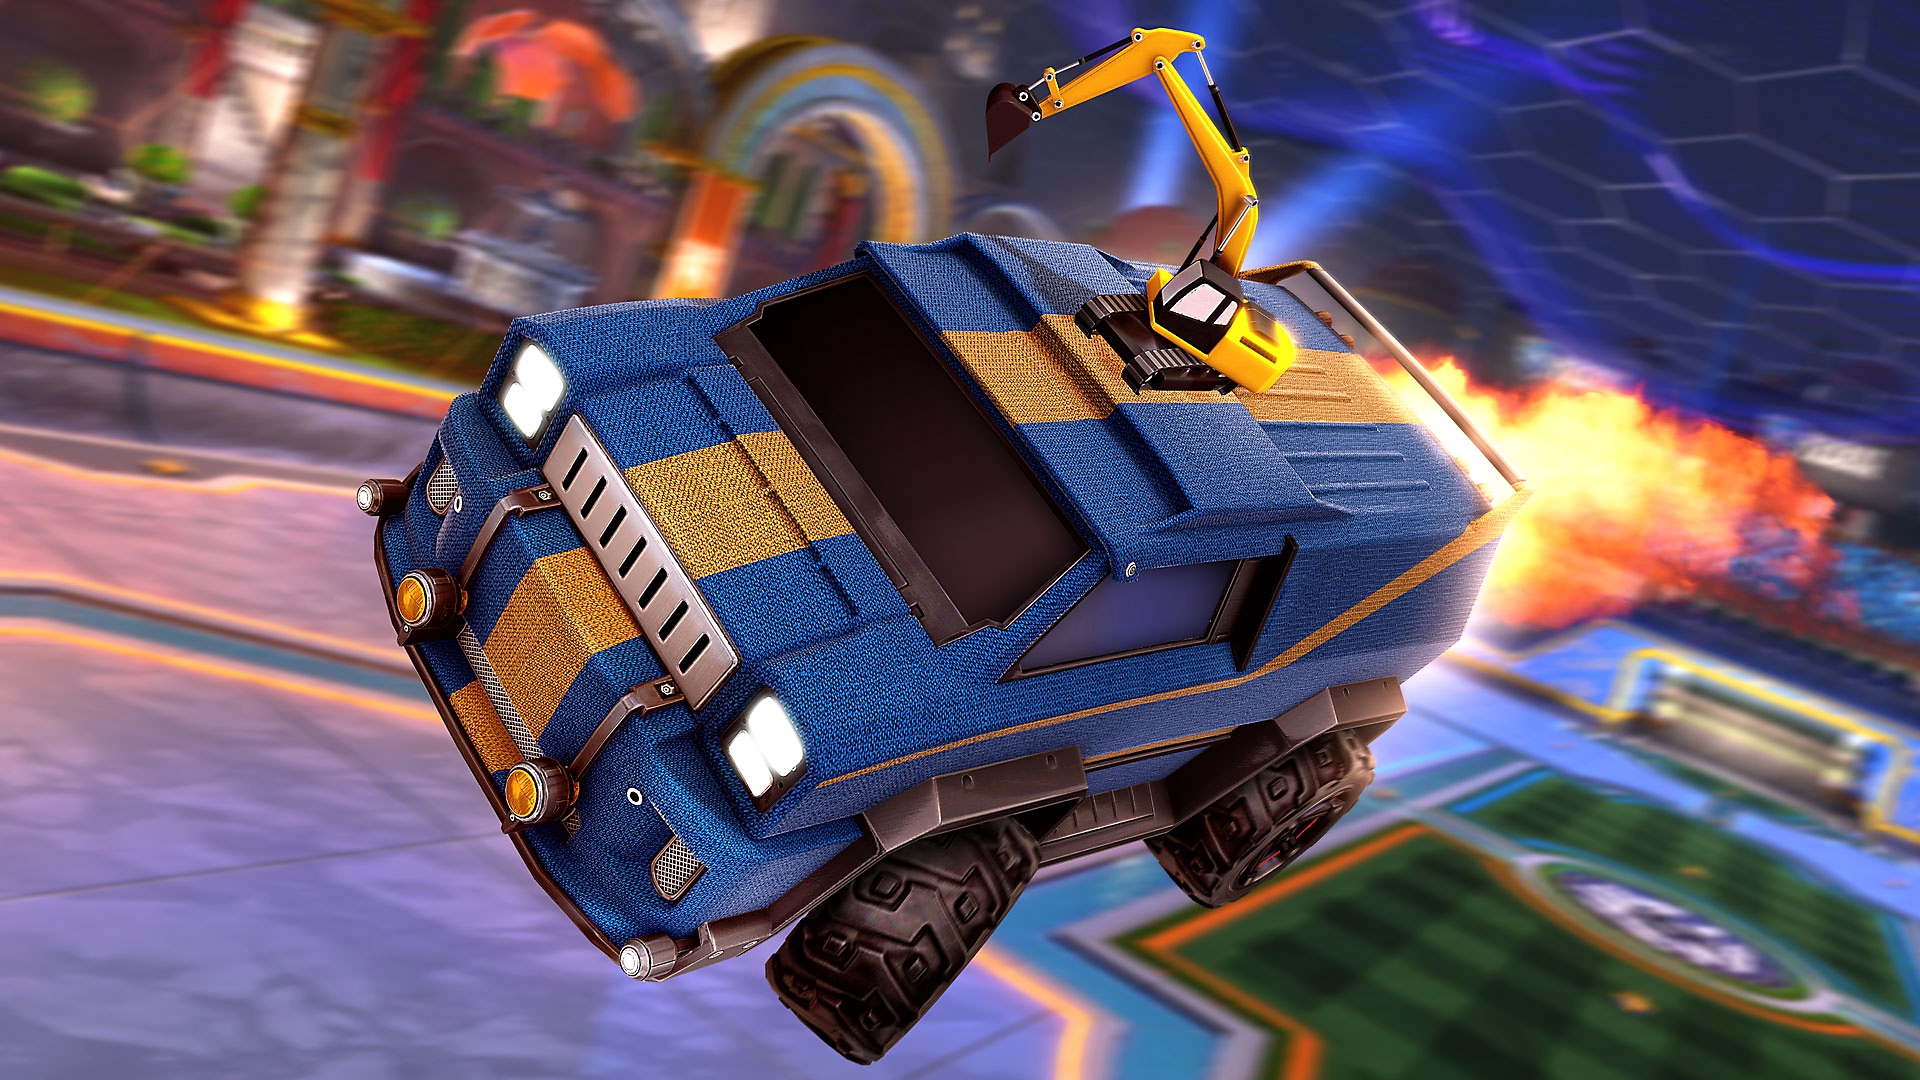 Rocket League – posnetek zaslona prikazuje modri kombi z rumeno dirkalno črto